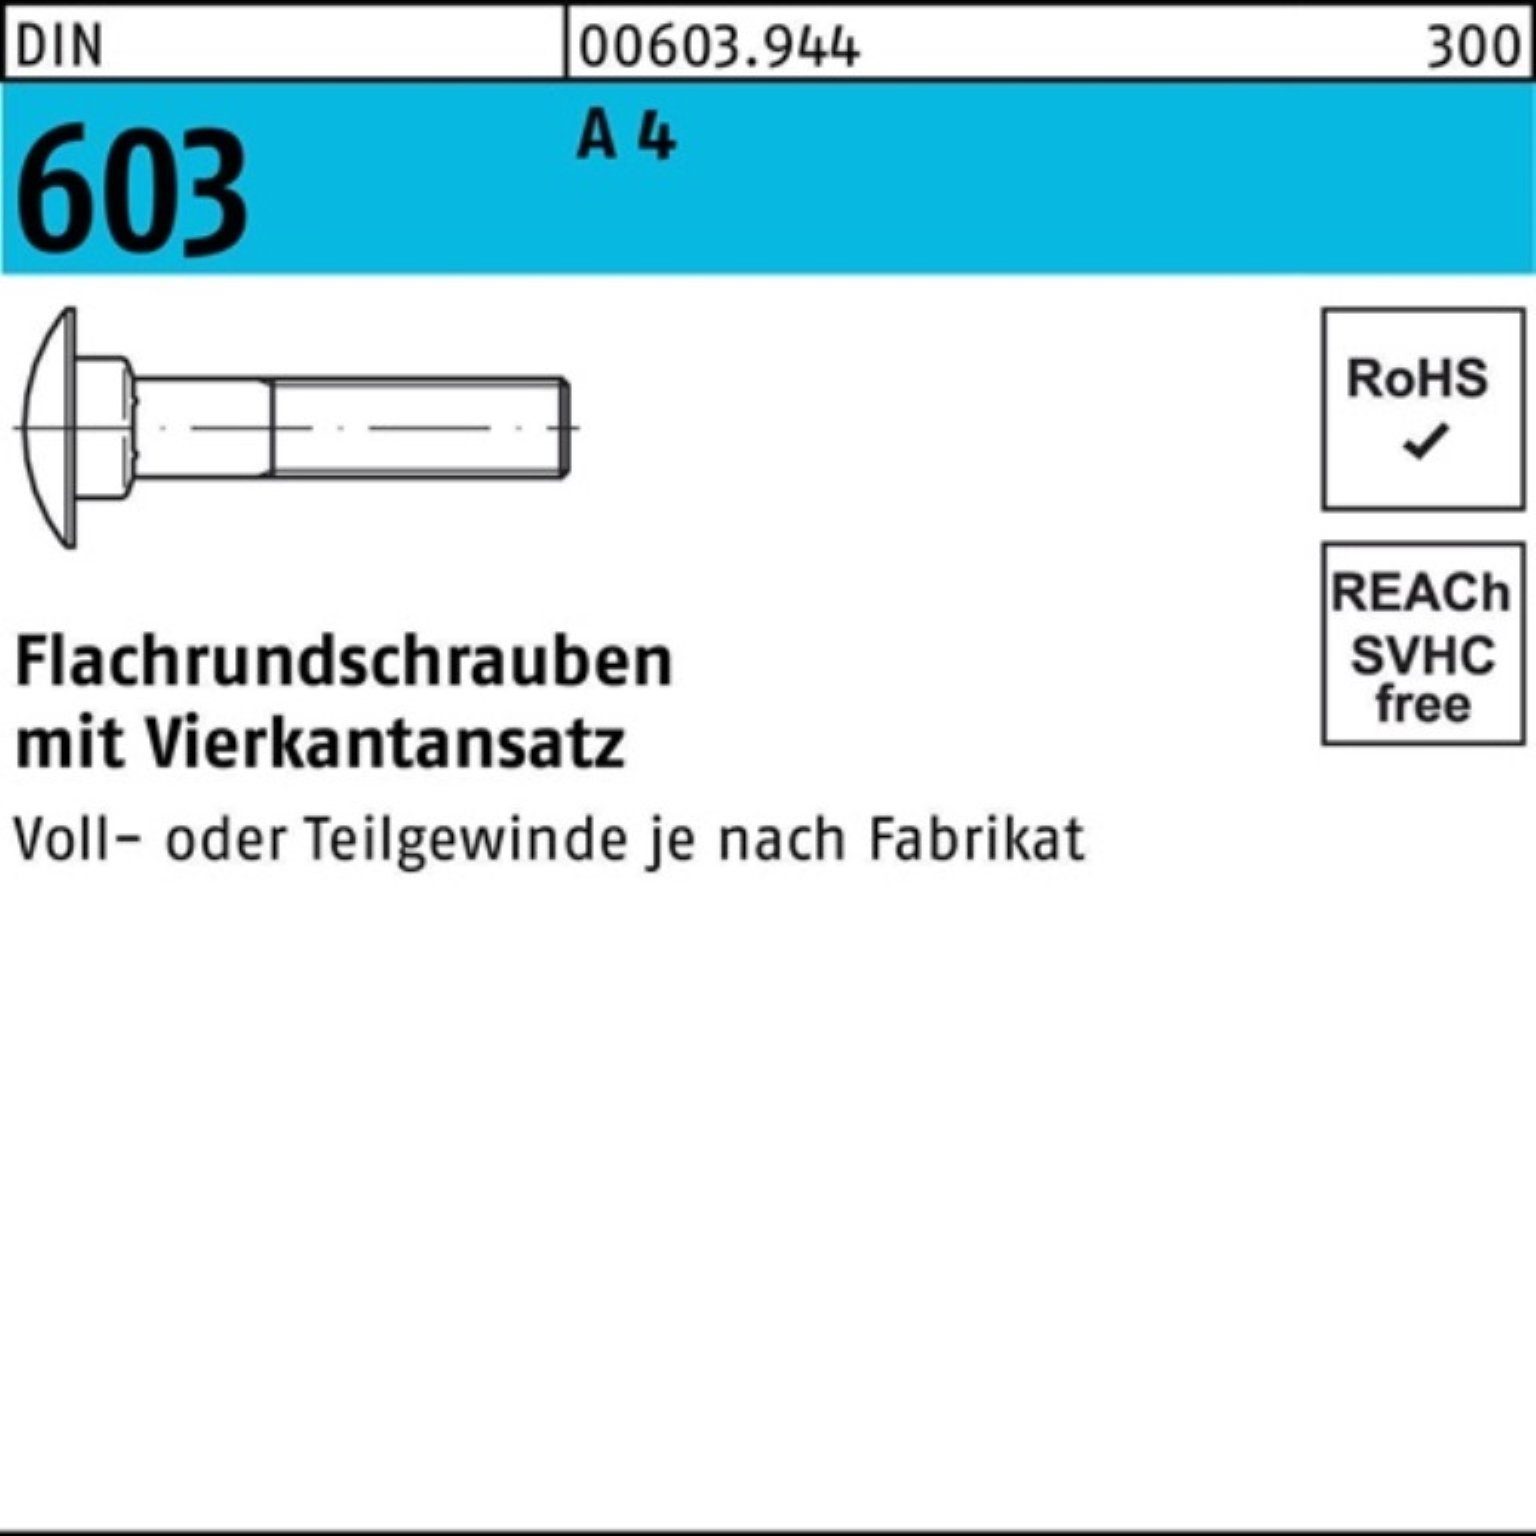 Reyher Schraube 100er Pack Flachrundschraube DIN 603 Vierkantansatz M16x 70 A 4 1 Stü